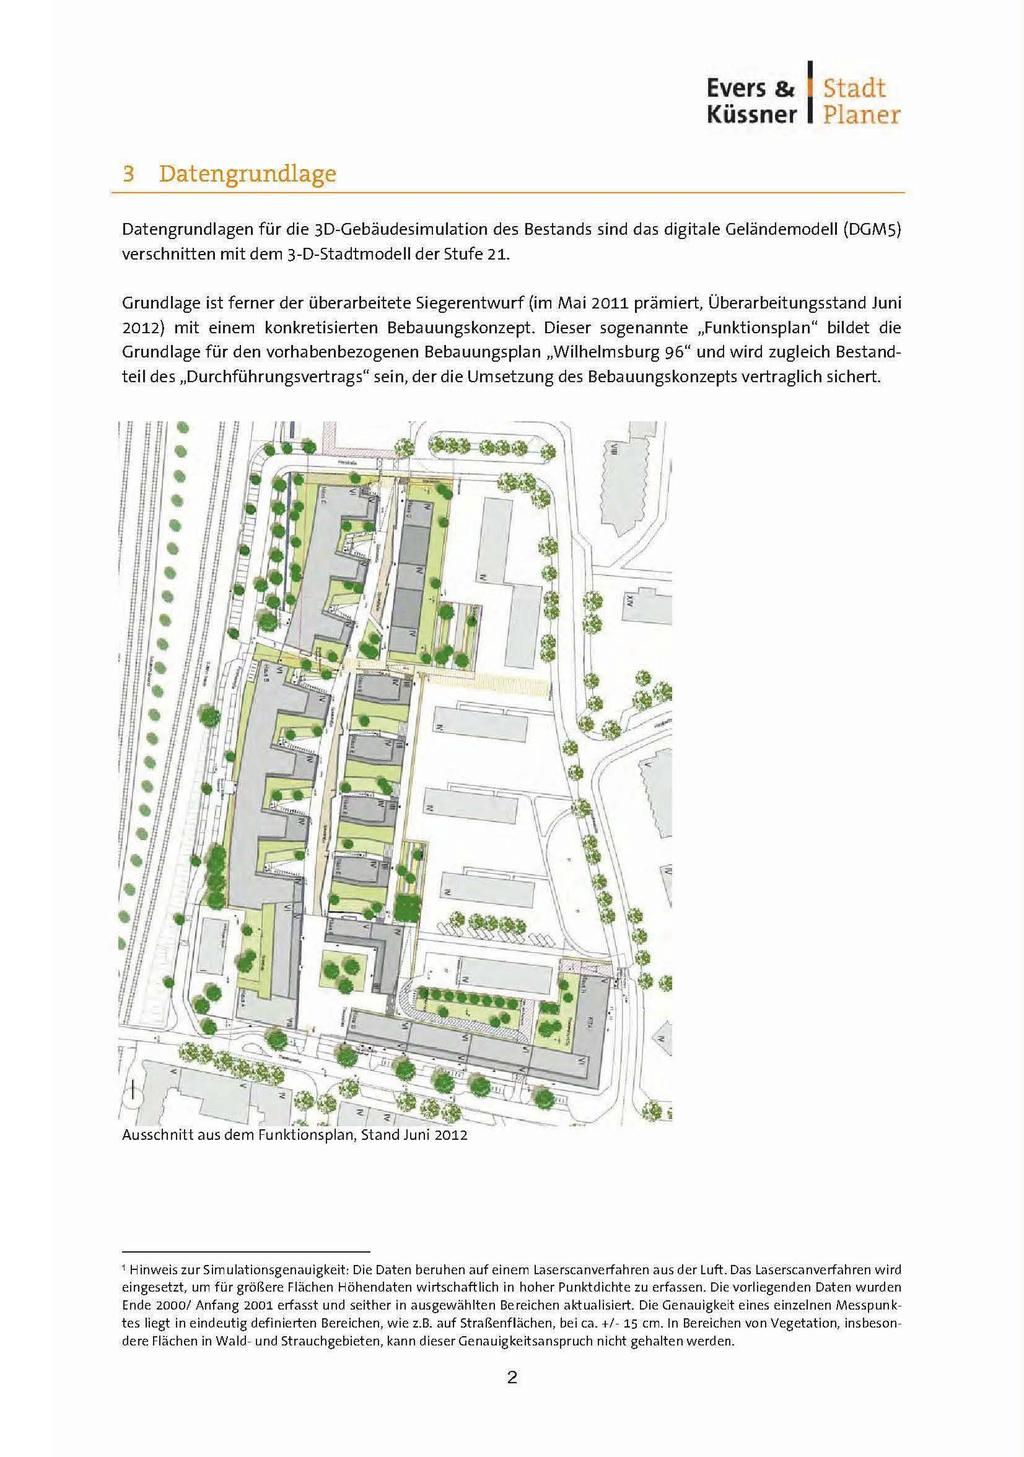 Evers & Küssner 1 Planer Stadt 3 Datengrundlage Datengrundlagen für die 3D-Gebäudesimulation des Bestands sind das digit ale Geländemodell (DGMS) verschnitten mit dem 3-D-Stadtmodell der Stufe 21.